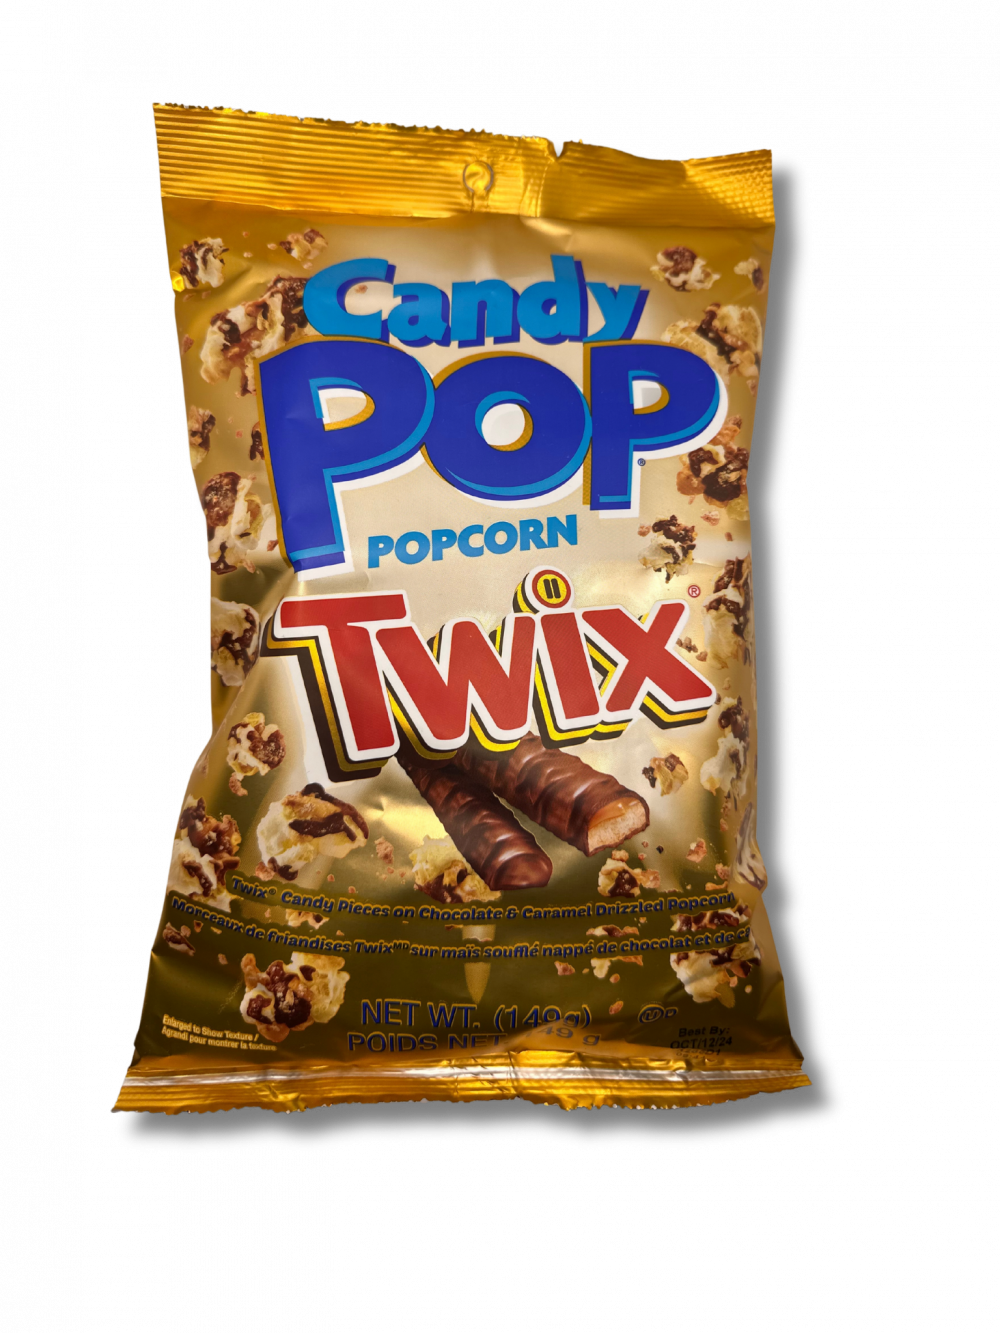 Tauche ein in eine knusprige Welt der Geschmacksexplosion mit Candy Pop Twix Popcorn aus den USA! Dieses unwiderstehliche Popcorn vereint den köstlichen Geschmack von Twix mit der luftigen Leichtigkeit von Popcorn. Jede Handvoll bietet die perfekte Balance zwischen salzigen Popcorn-Körnern, cremiger Schokolade und dem süßen Karamell des beliebten Twix-Riegels. Verwöhne deine Sinne mit diesem einzigartigen Snack, der süß und salzig in perfekter Harmonie vereint. Hol dir das Candy Pop Twix Popcorn jetzt und erlebe den ultimativen Genuss für Filmabende, Partys oder einfach als süße Belohnung! […] - Breddas Hemp & Sweets Company Wuppertal